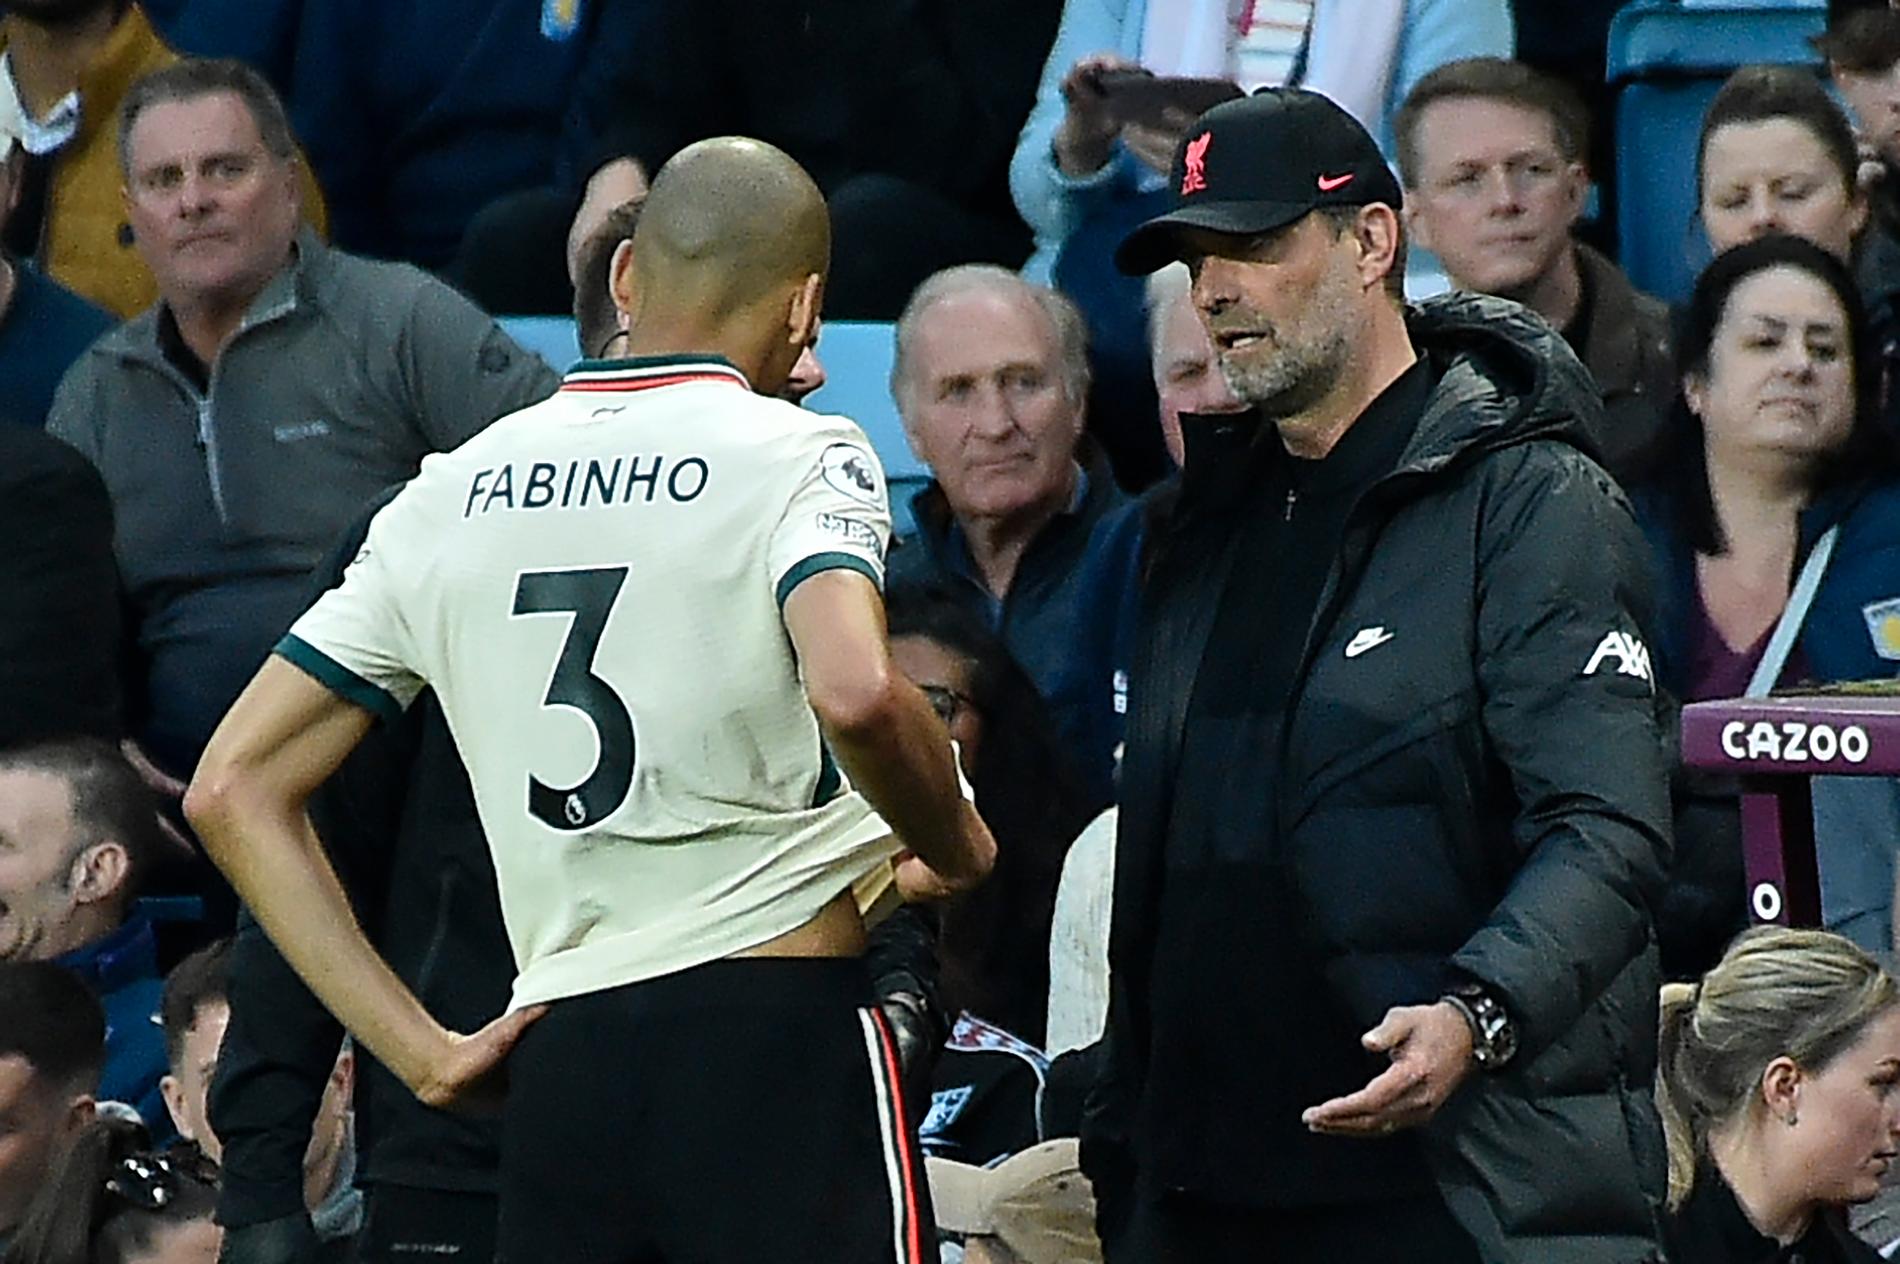 Liverpoolmittfältaren Fabinho blev skadad mot Aston Villa i tisdags. Här syns han i samspråk med tränaren Jürgen Klopp i samband med det.